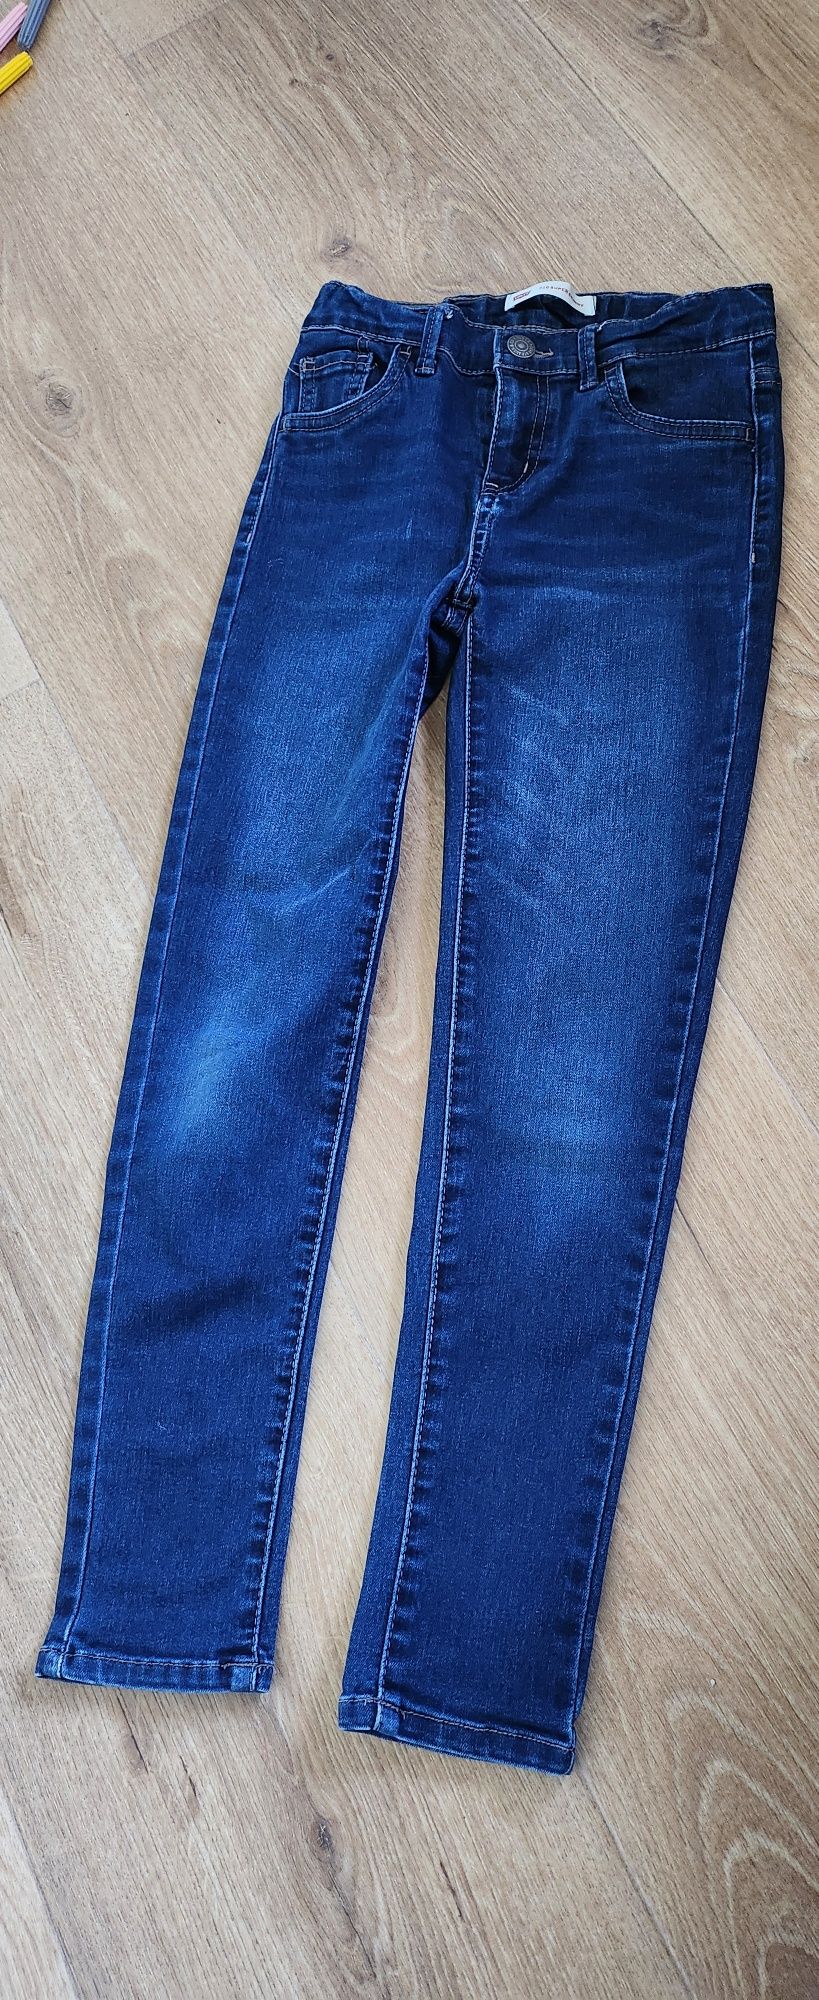 Spodnie jeansowe jeans rurki Levi's 710 rozmiar 128